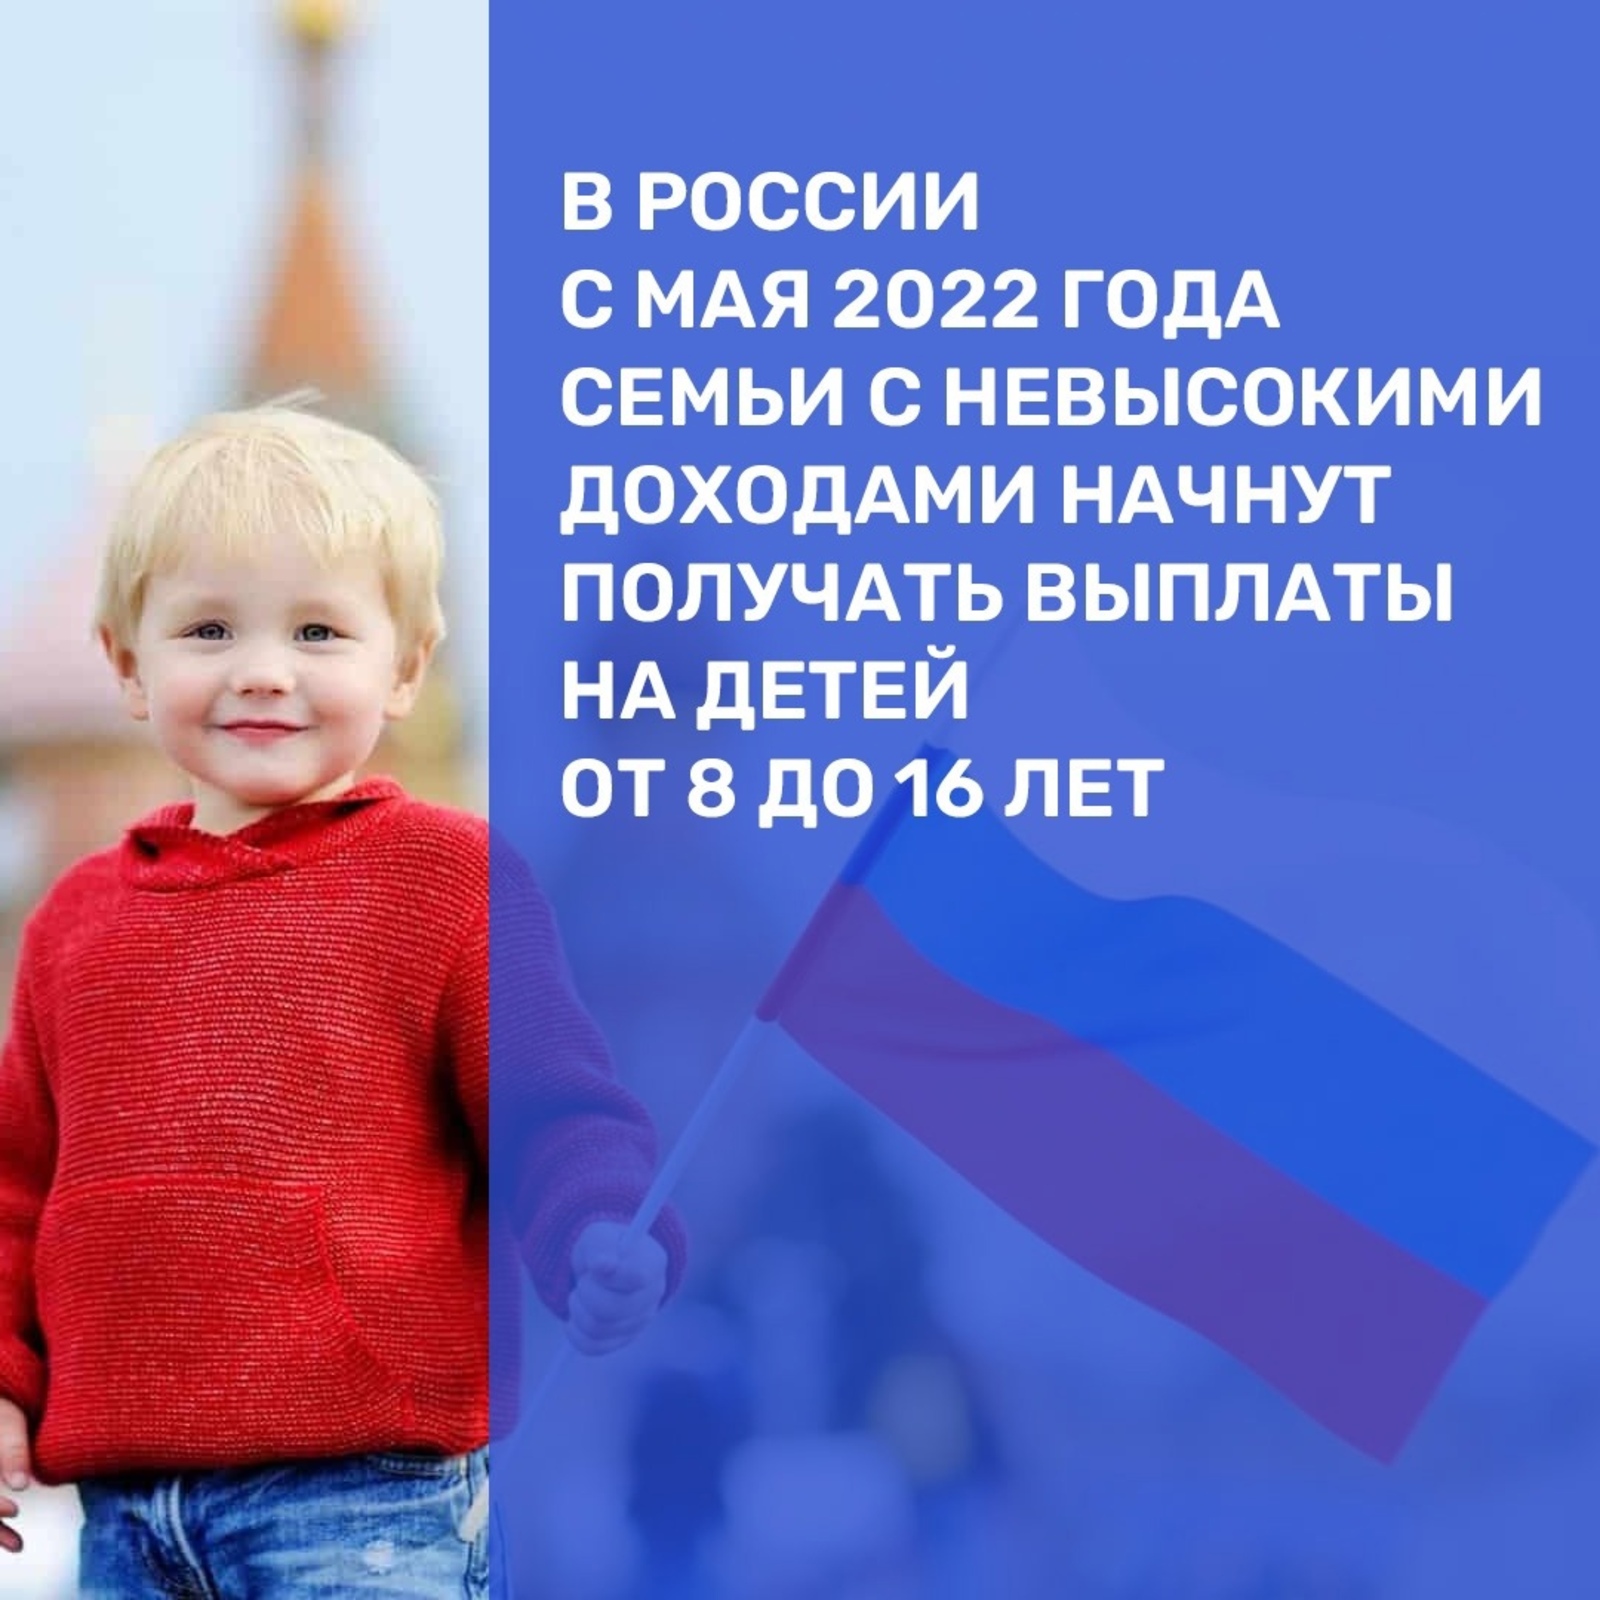 В Башкортостане пособия на детей от 8 до 16 лет начнут выплачивать в мае 2022 года